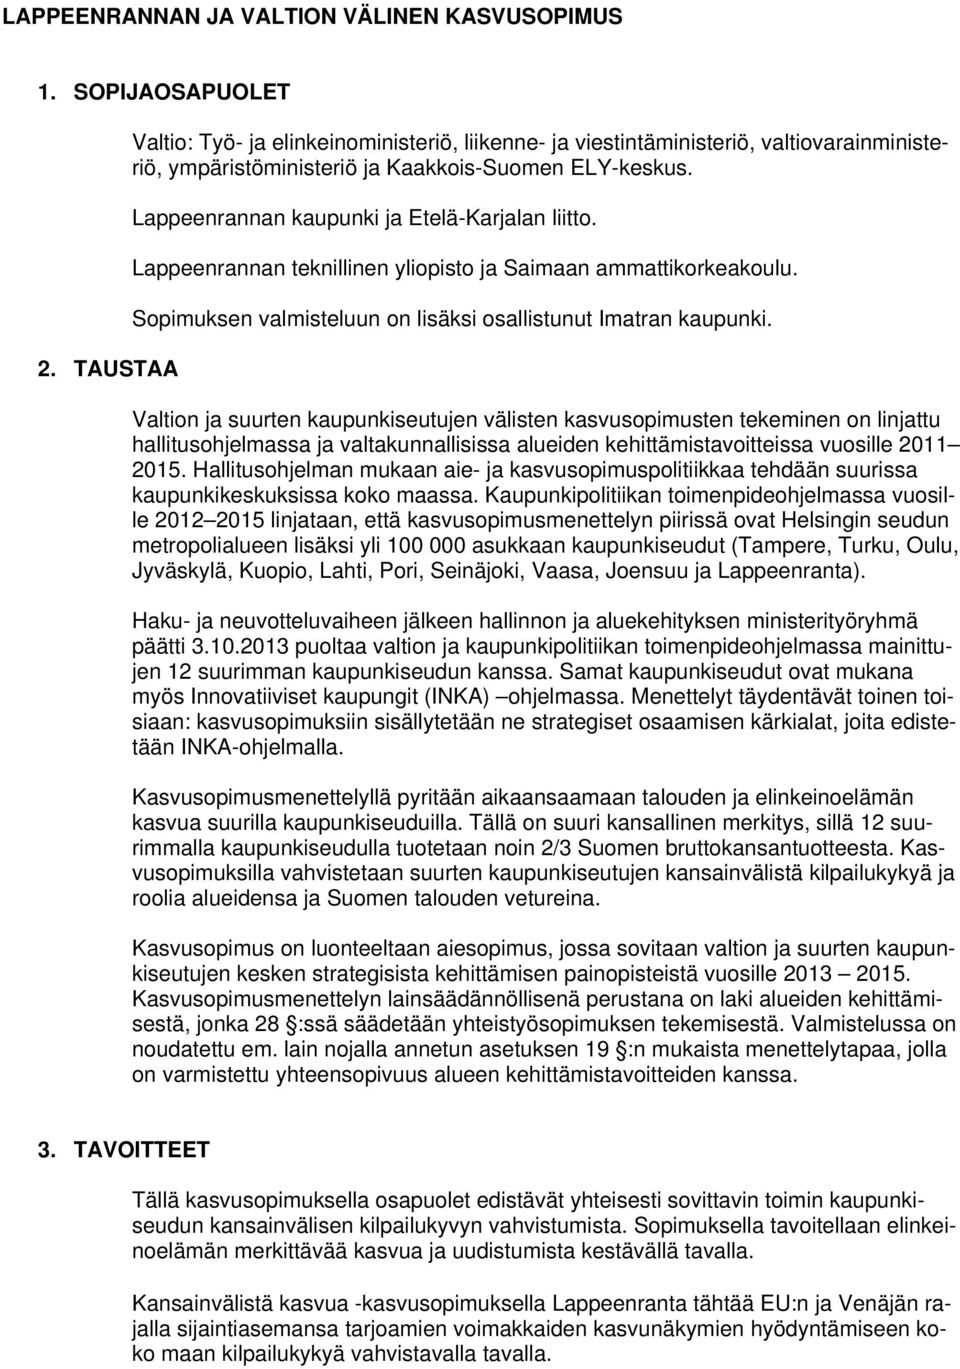 Lappeenrannan kaupunki ja Etelä-Karjalan liitto. Lappeenrannan teknillinen yliopisto ja Saimaan ammattikorkeakoulu. Sopimuksen valmisteluun on lisäksi osallistunut Imatran kaupunki.